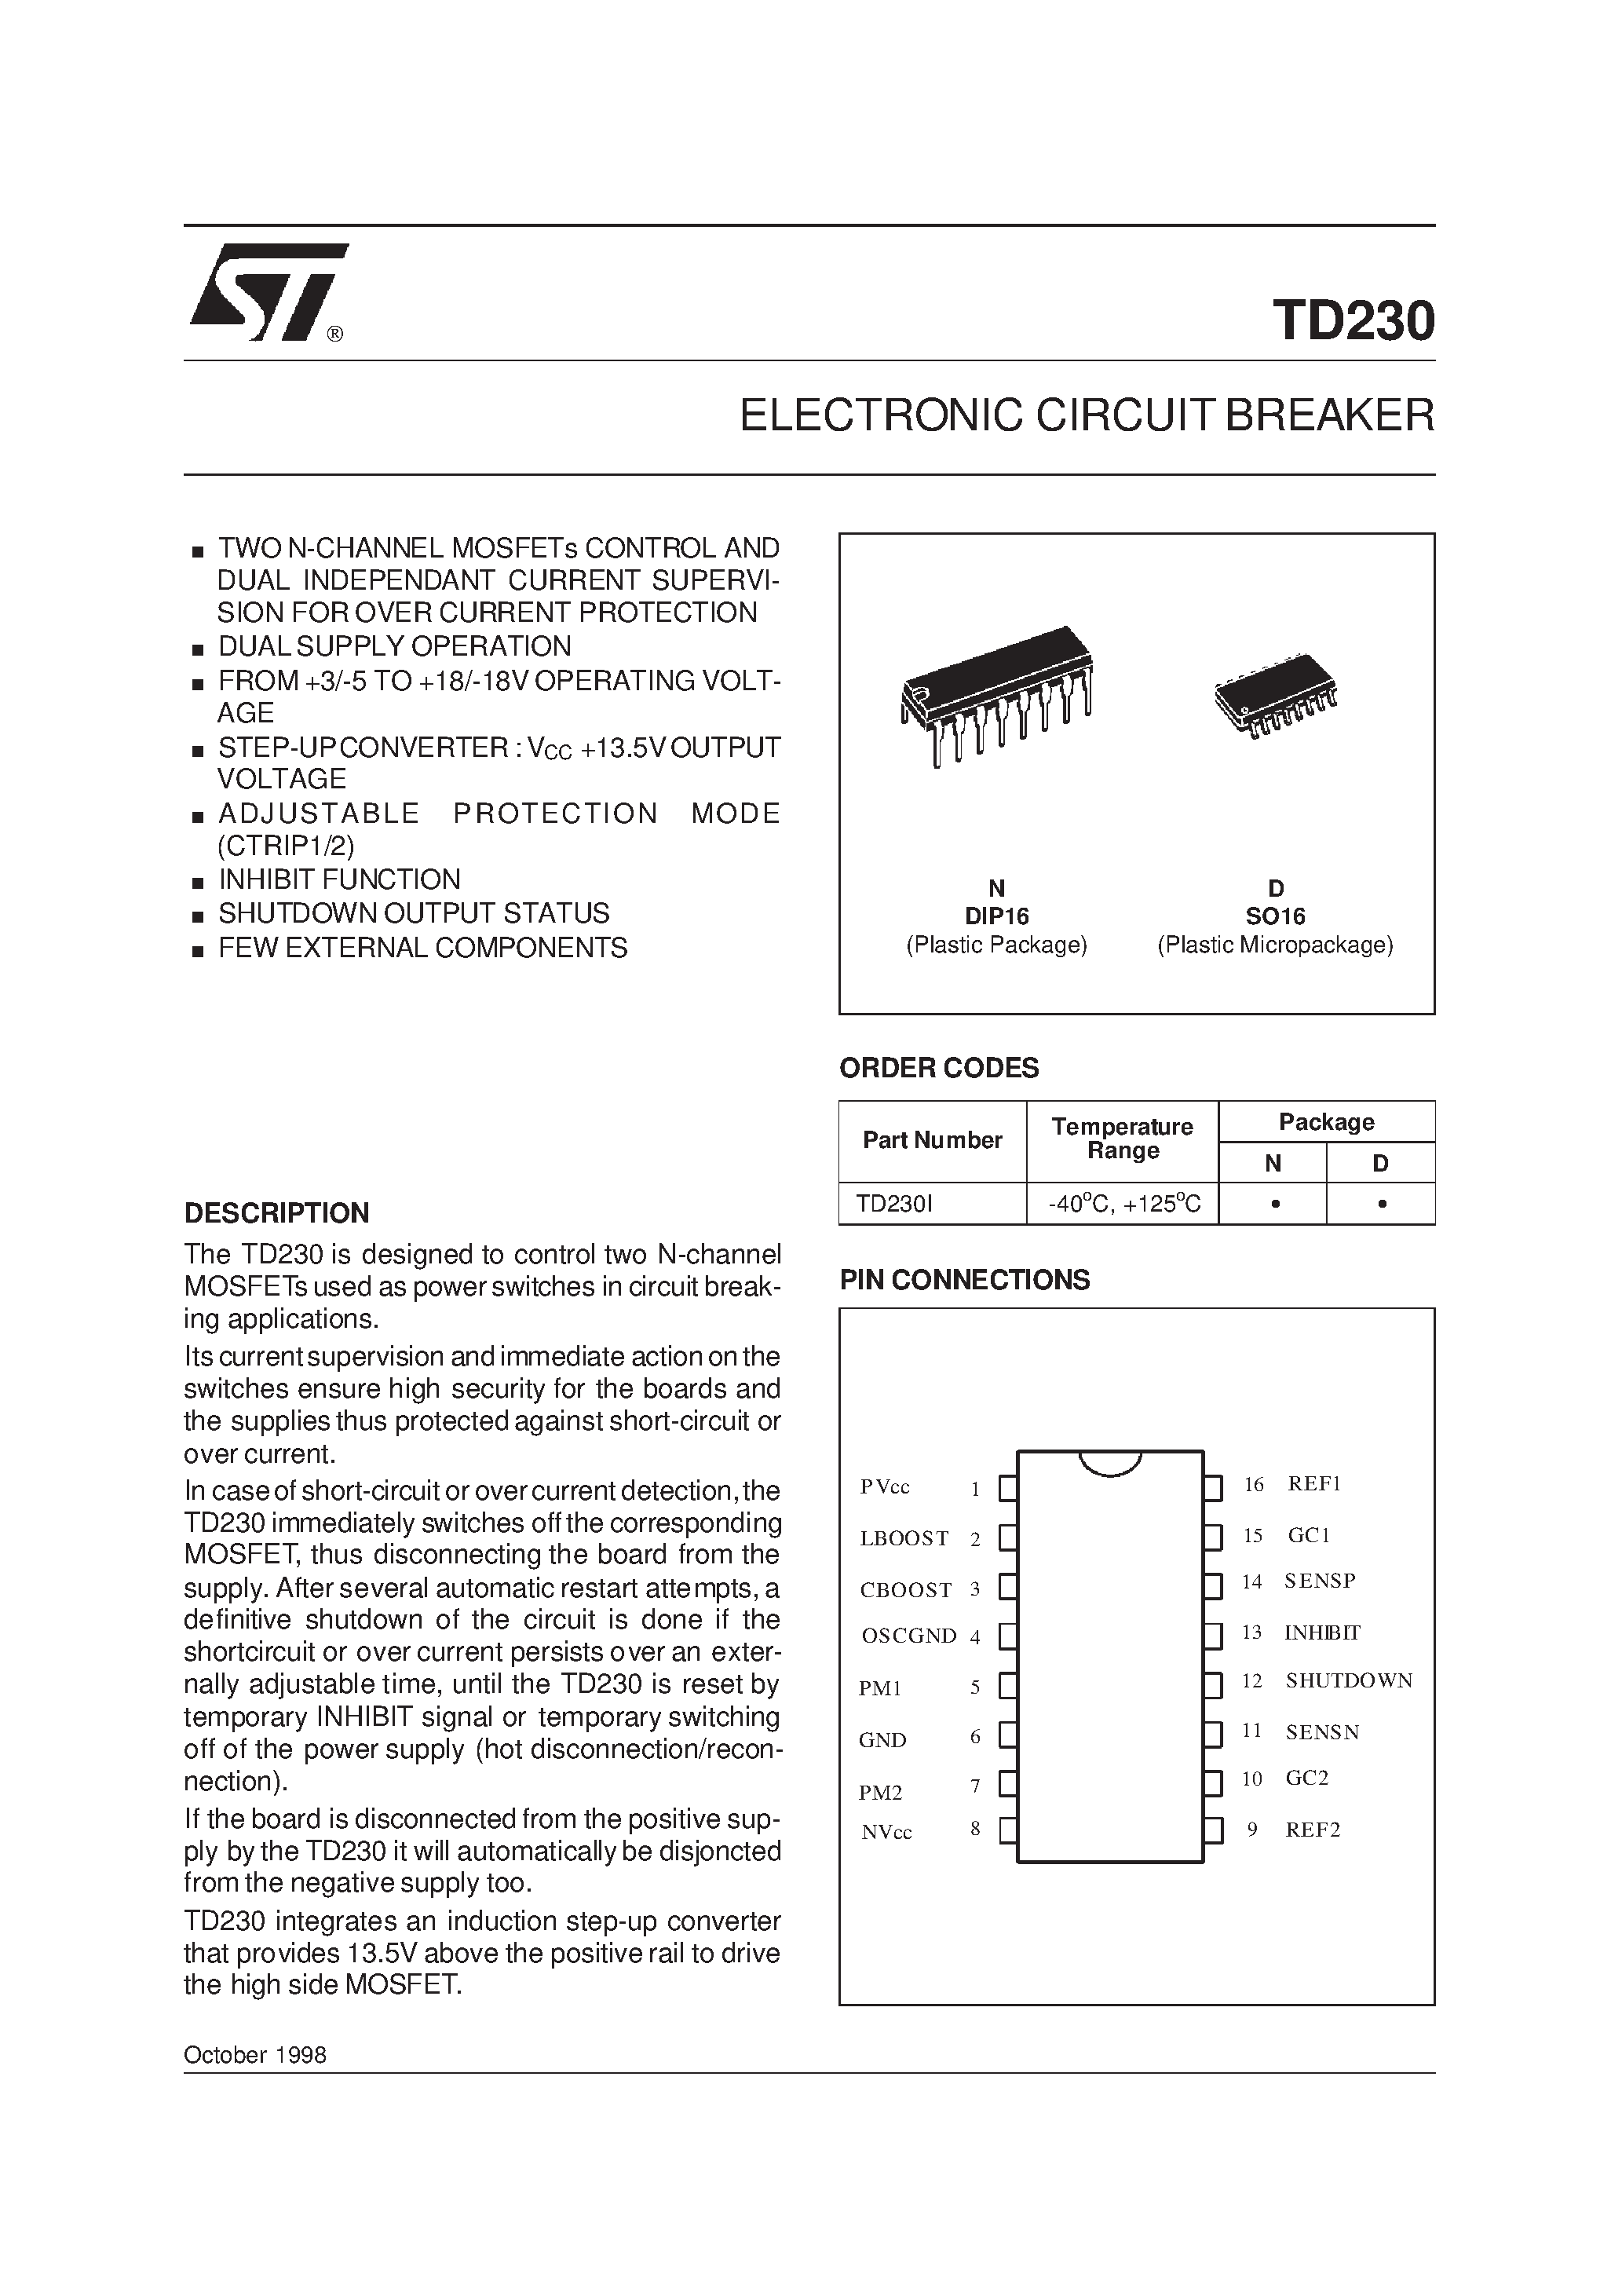 Даташит TD230I - ELECTRONIC CIRCUIT BREAKER страница 1